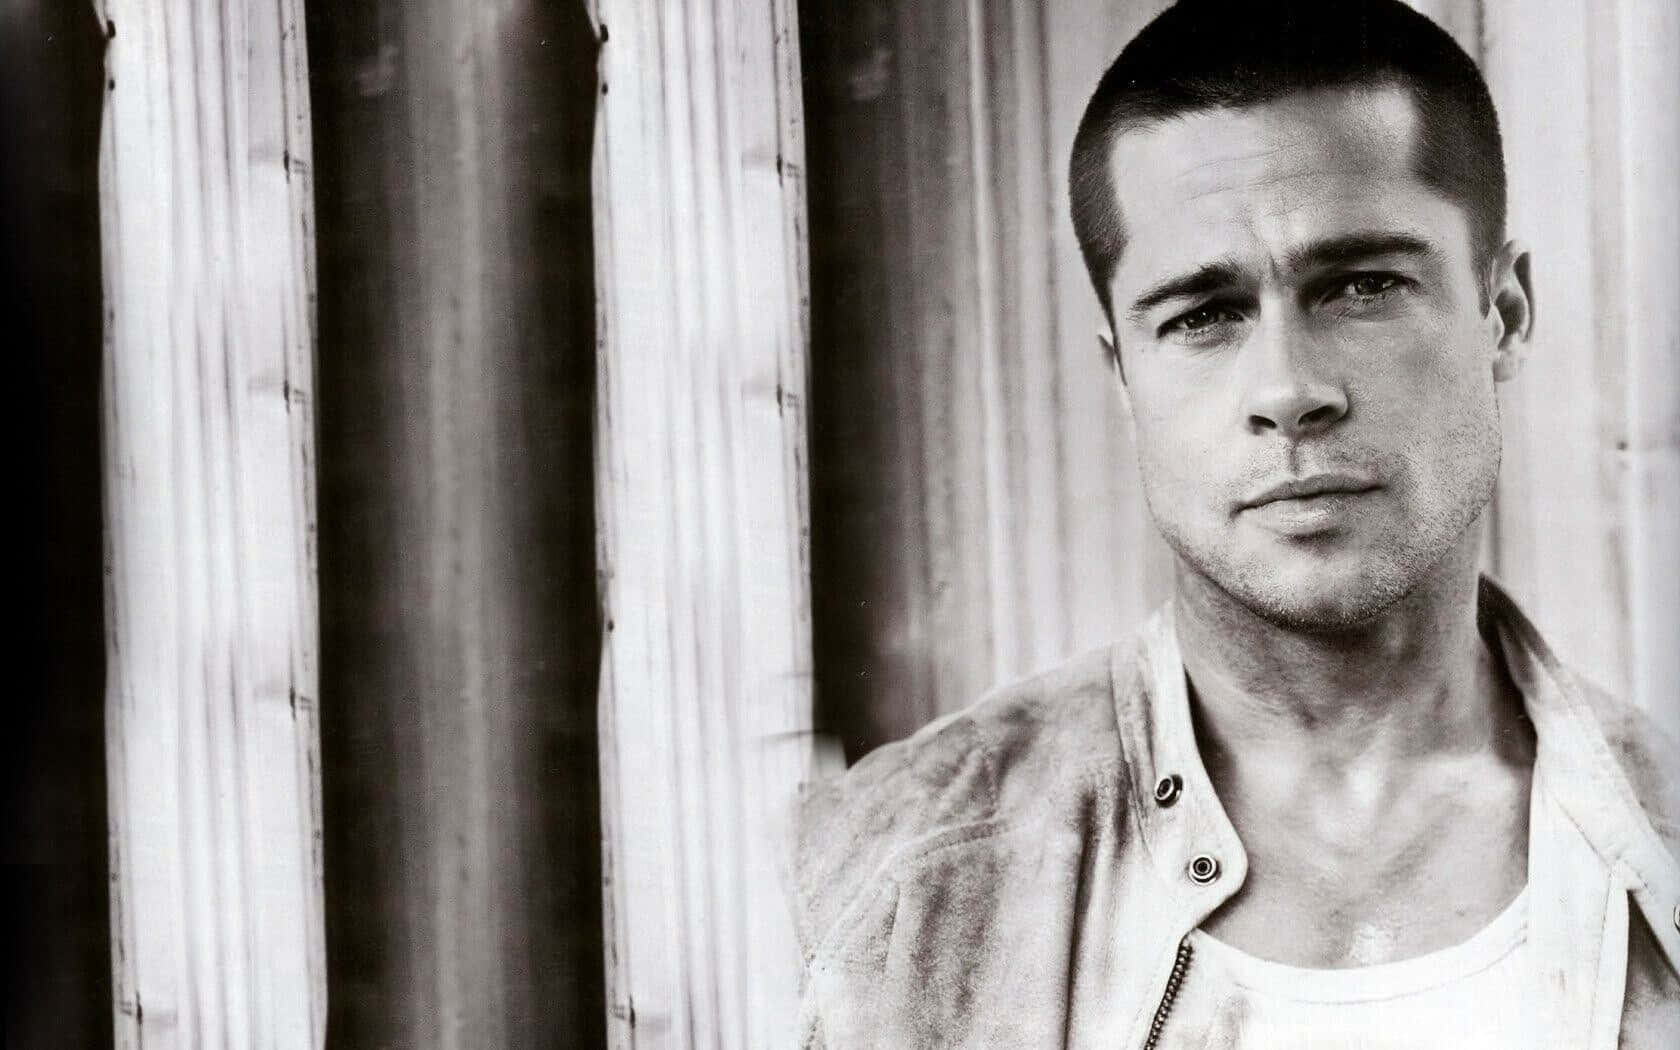 Brad Pitt, Hollywood superstar